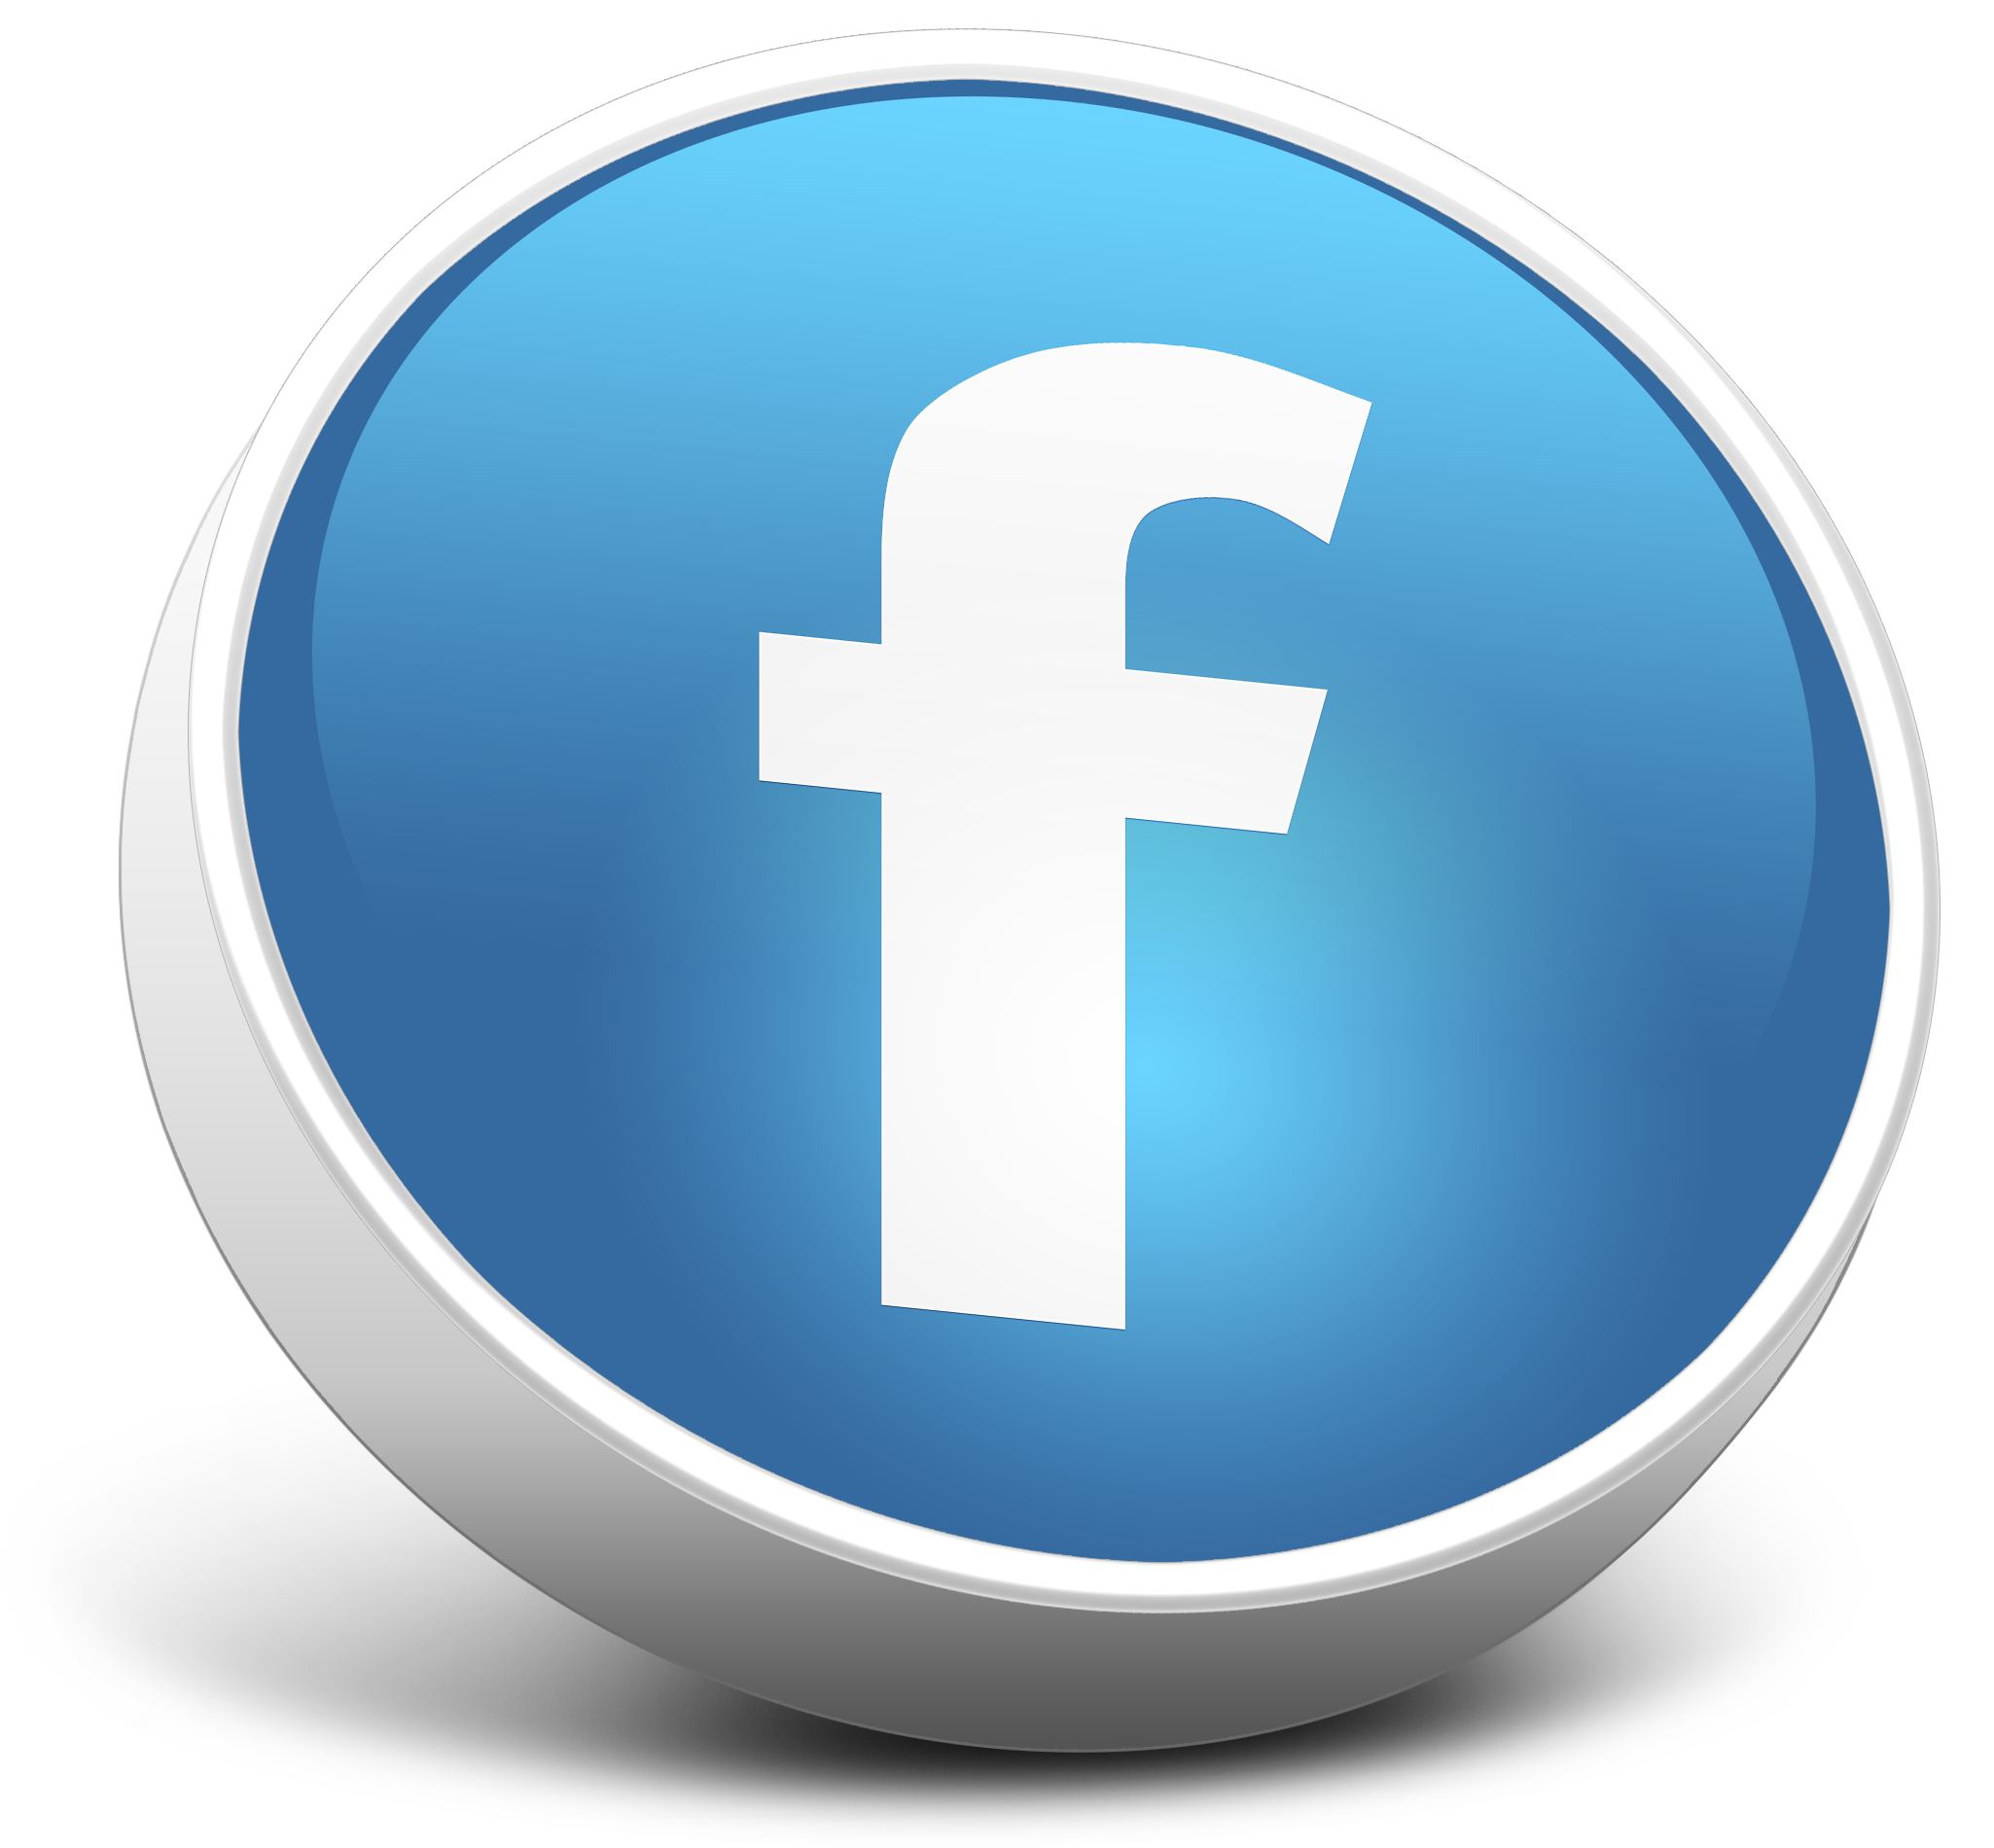 Logotipo de Imagen PNG de Facebookn de alta calidad